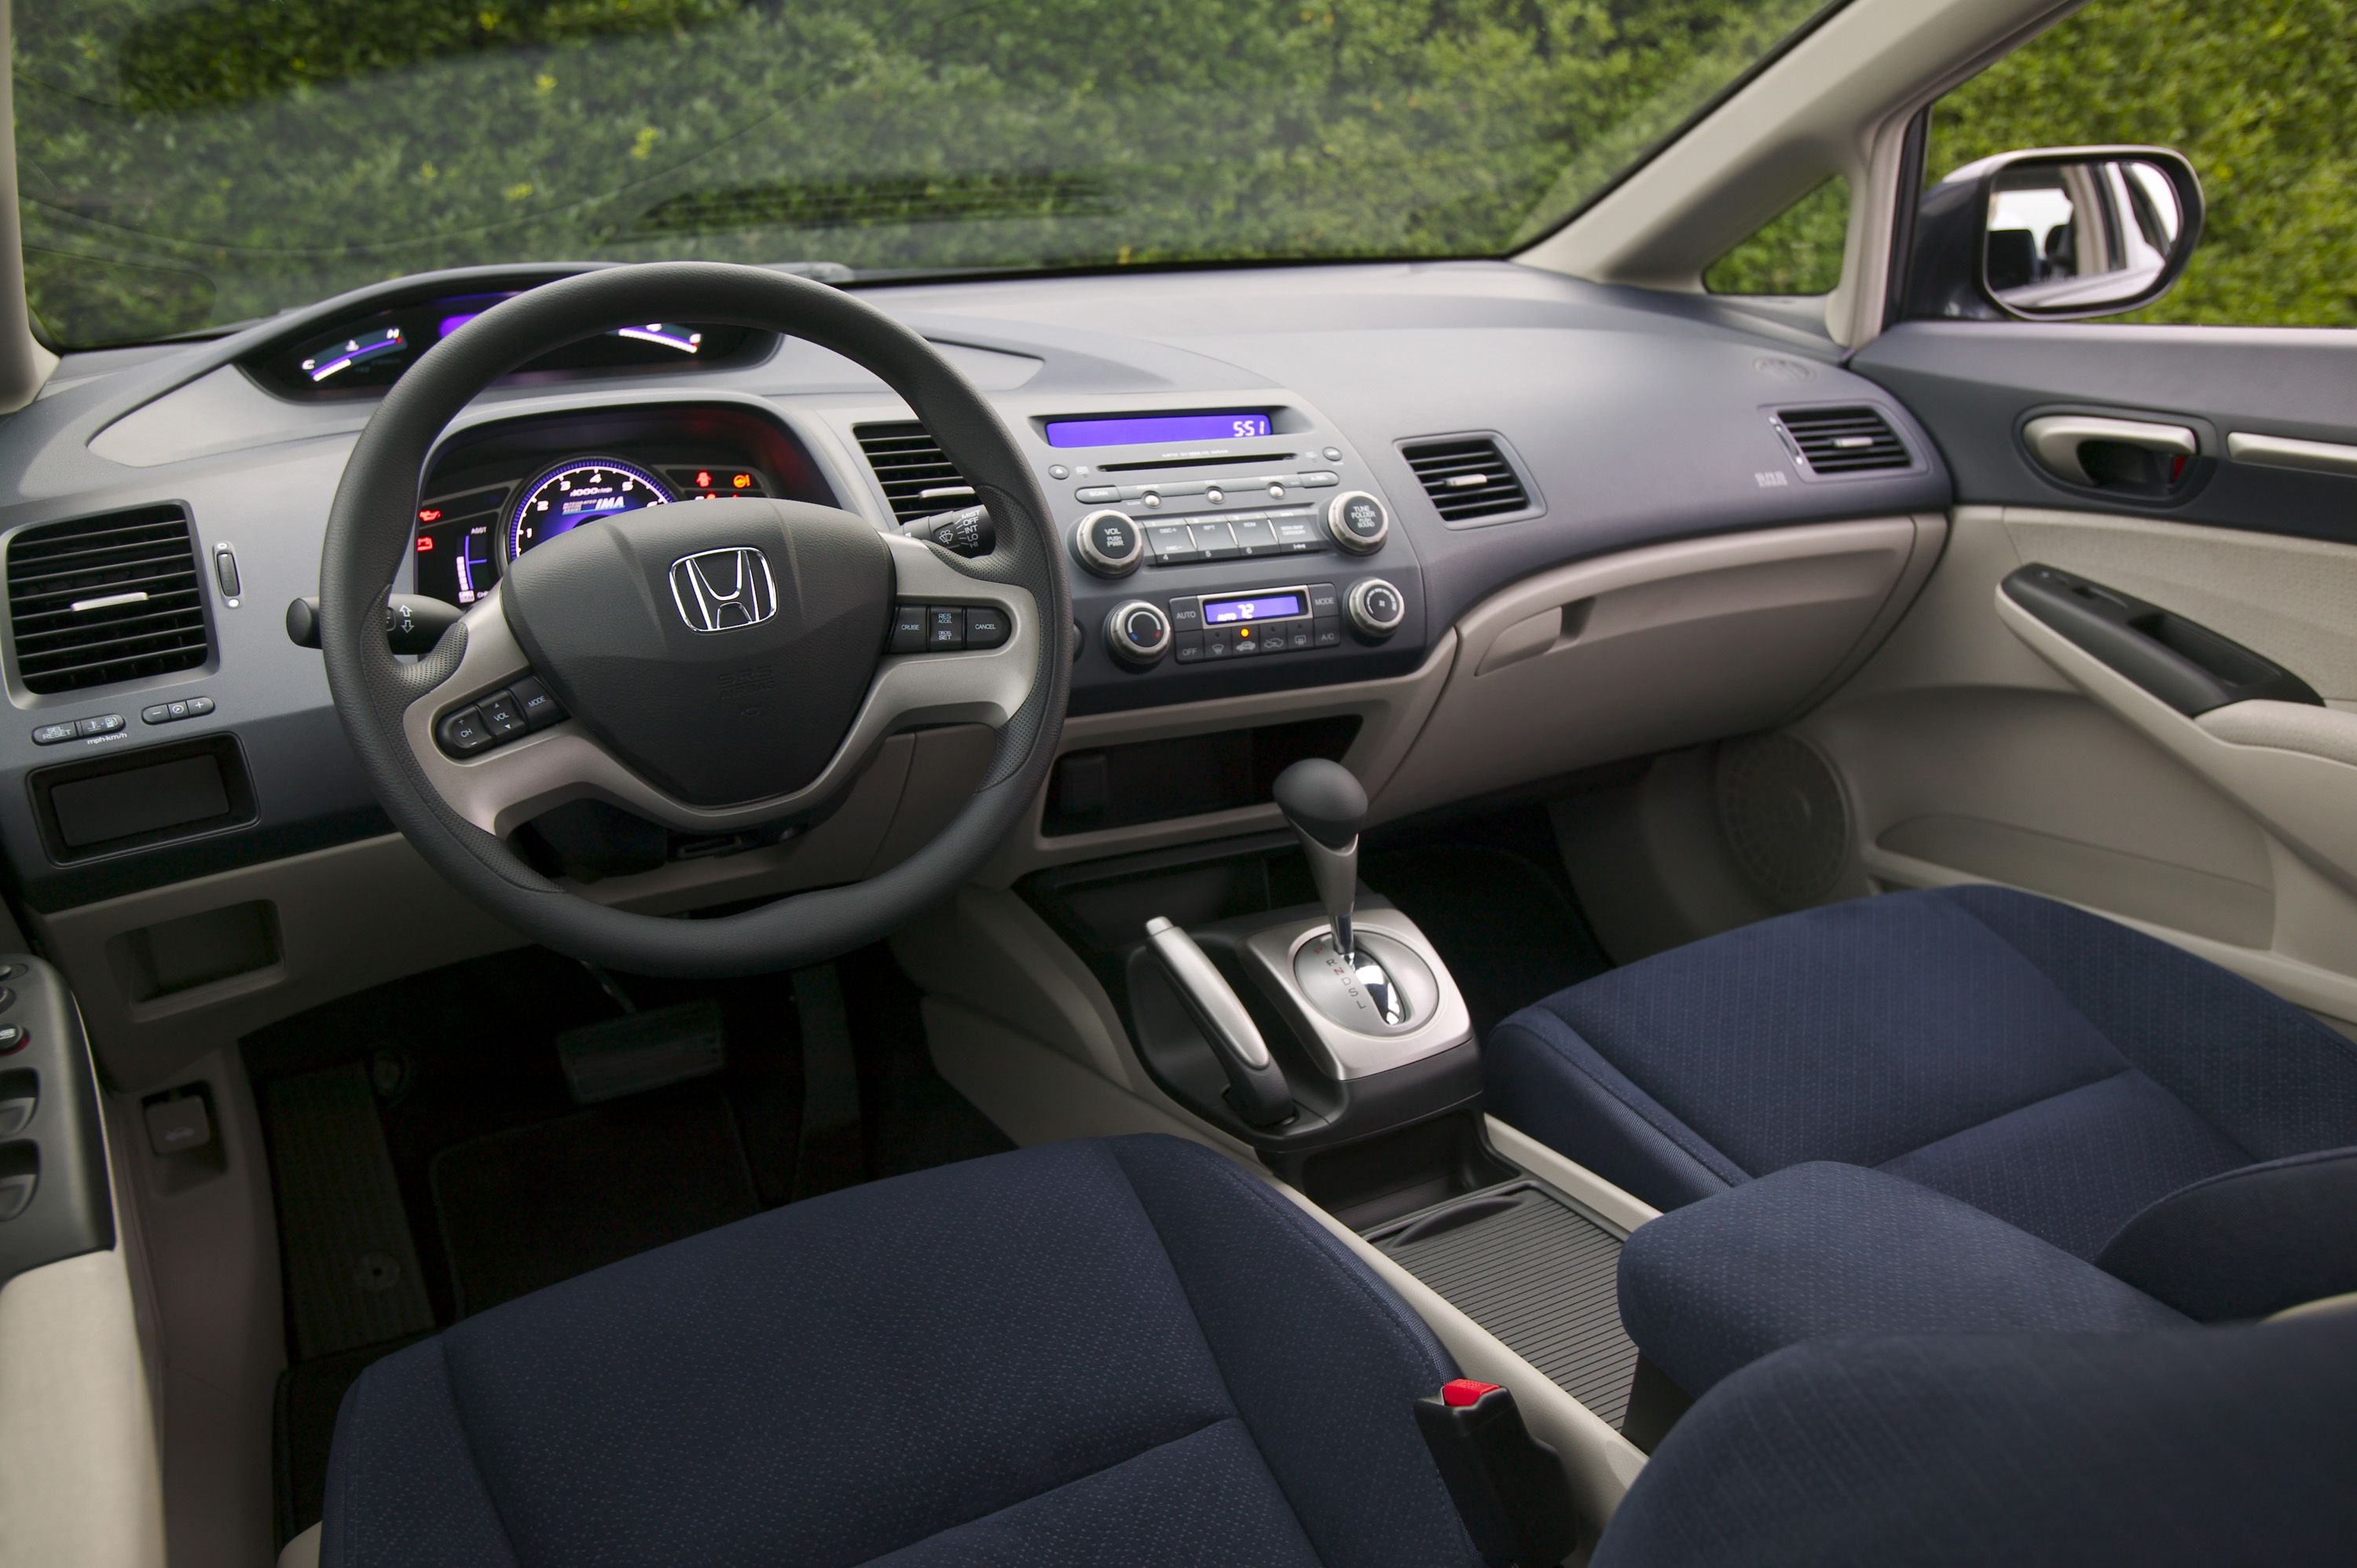 2006 Honda Civic Hybrid